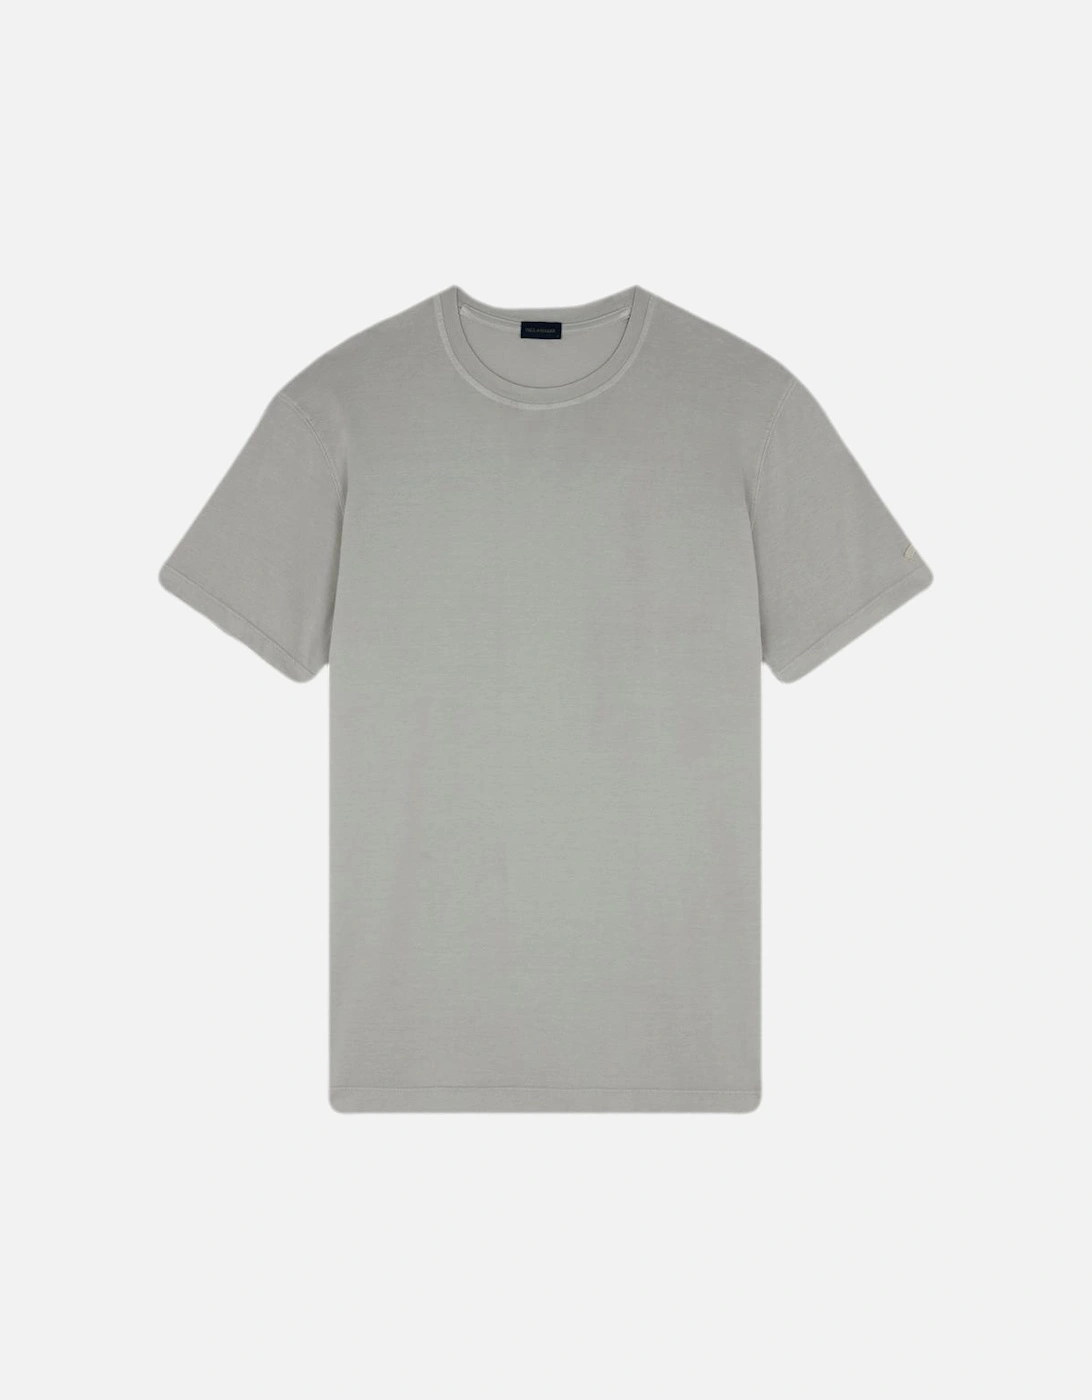 GD Cotton Jersey T-Shirt 029 Almond, 4 of 3